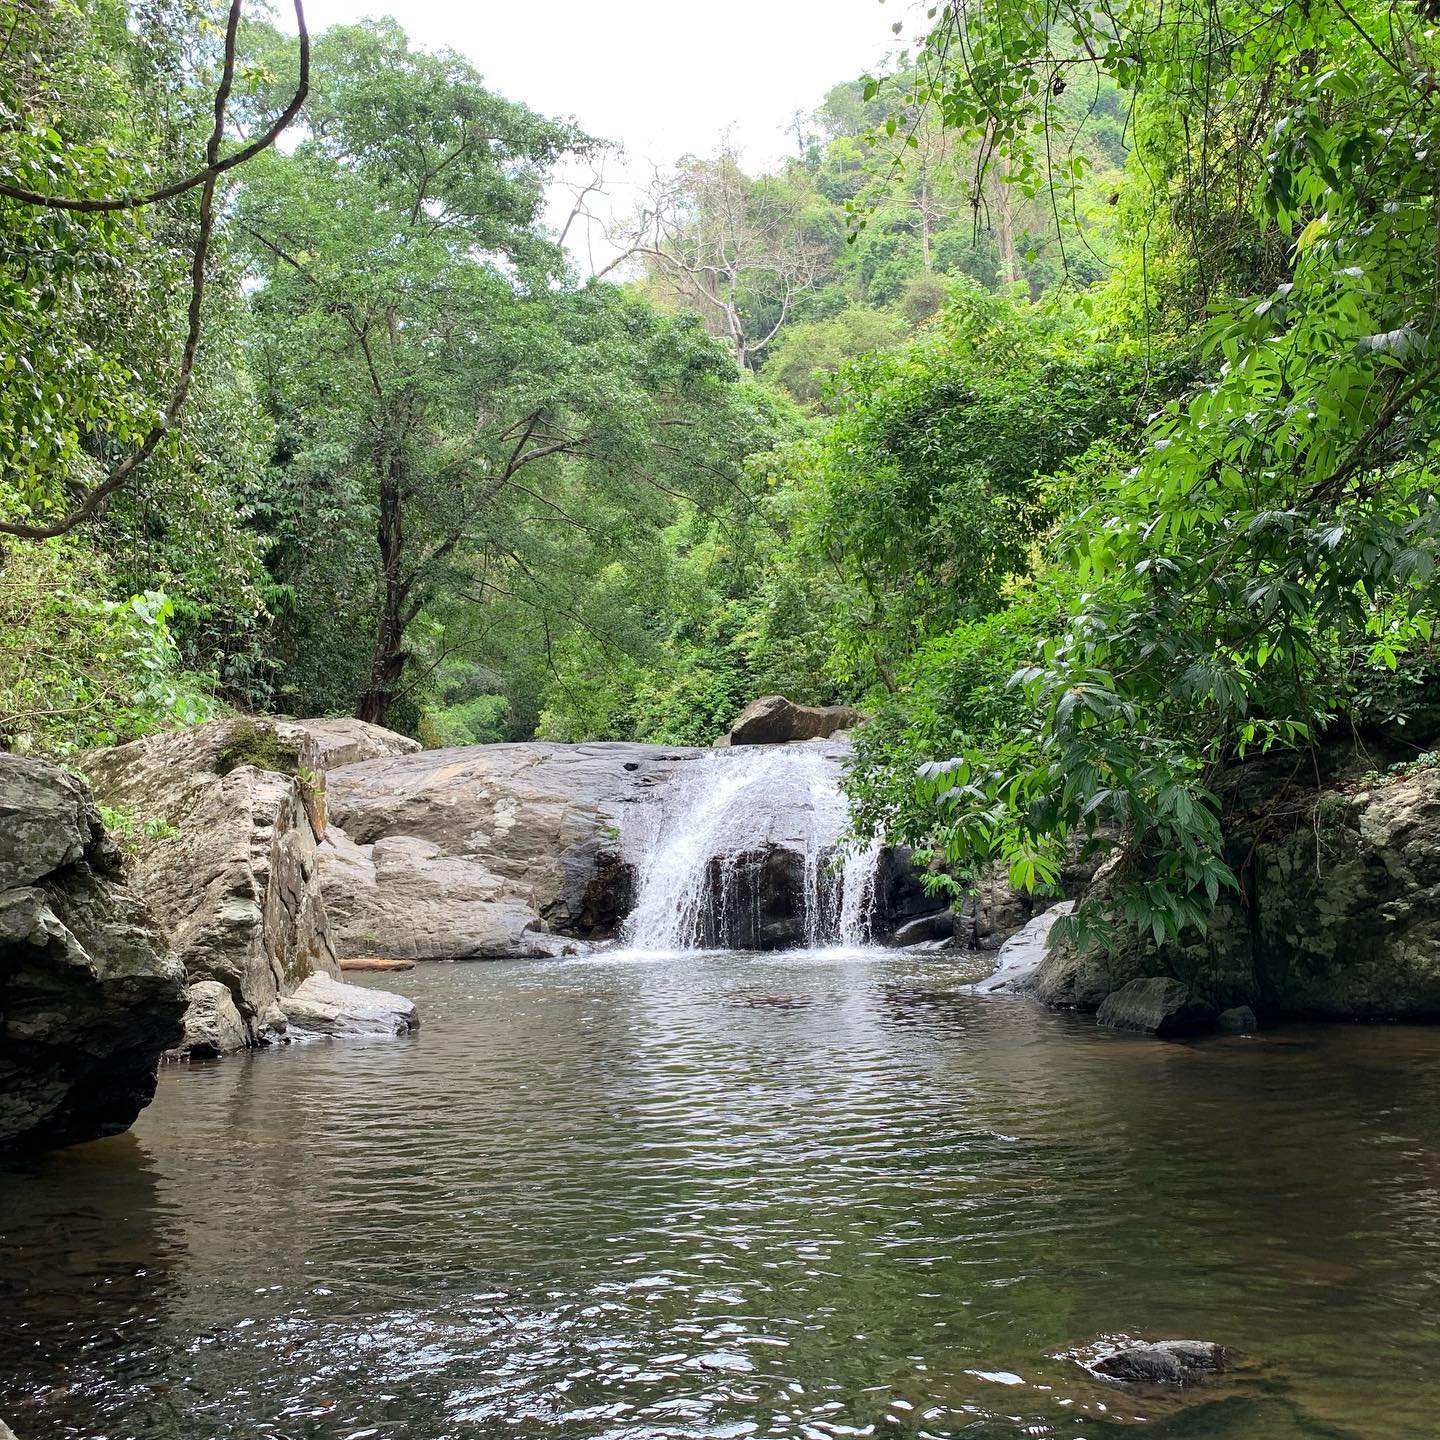 things to do near bangkok - Pa-La-U Waterfall